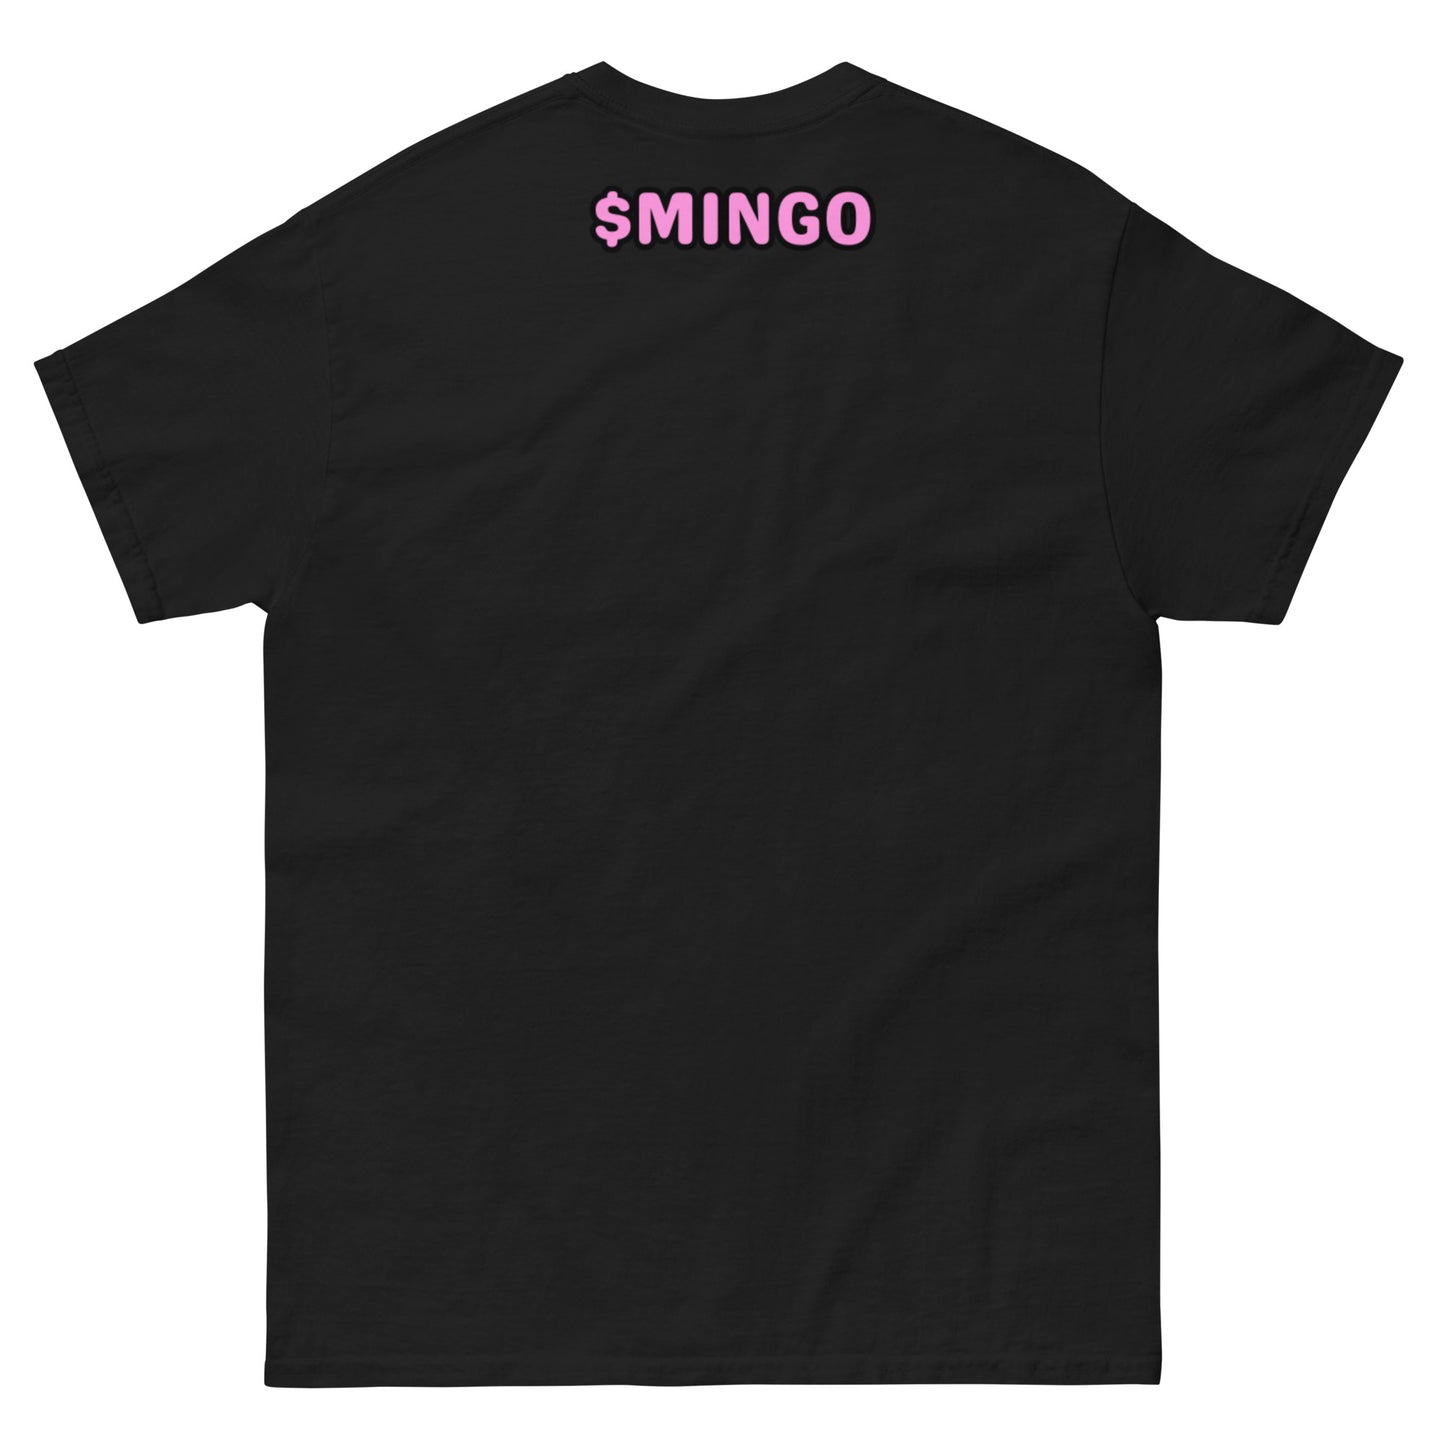 Classic $MINGO t-shirt